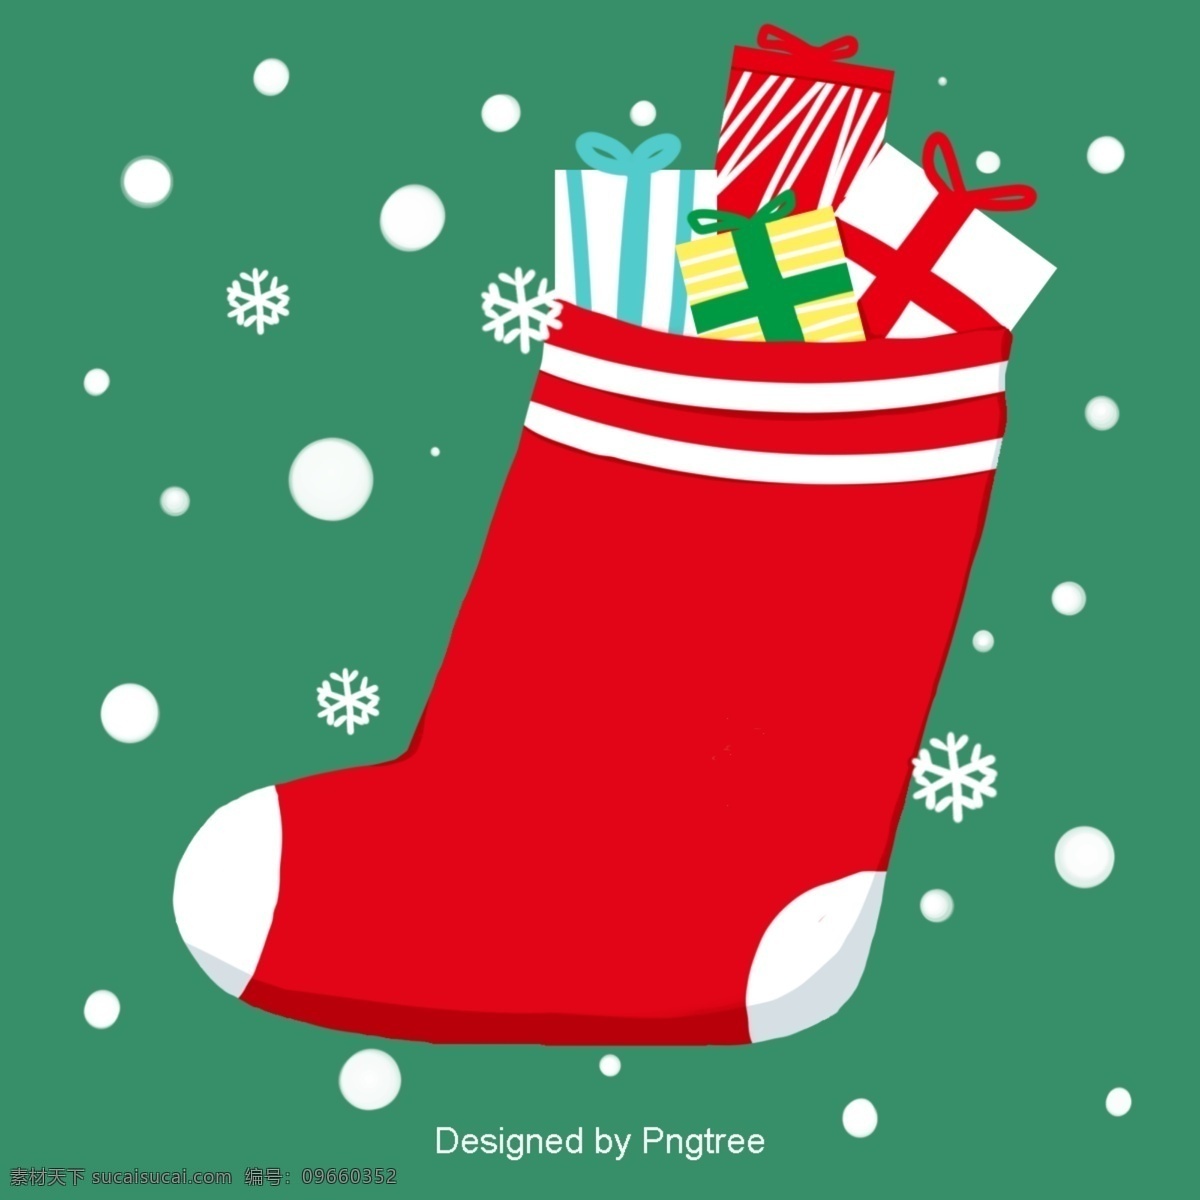 圣诞节 一个 简单 可爱 卡通壁纸 圣诞快乐 复古 圣诞 背景 礼物 袜子